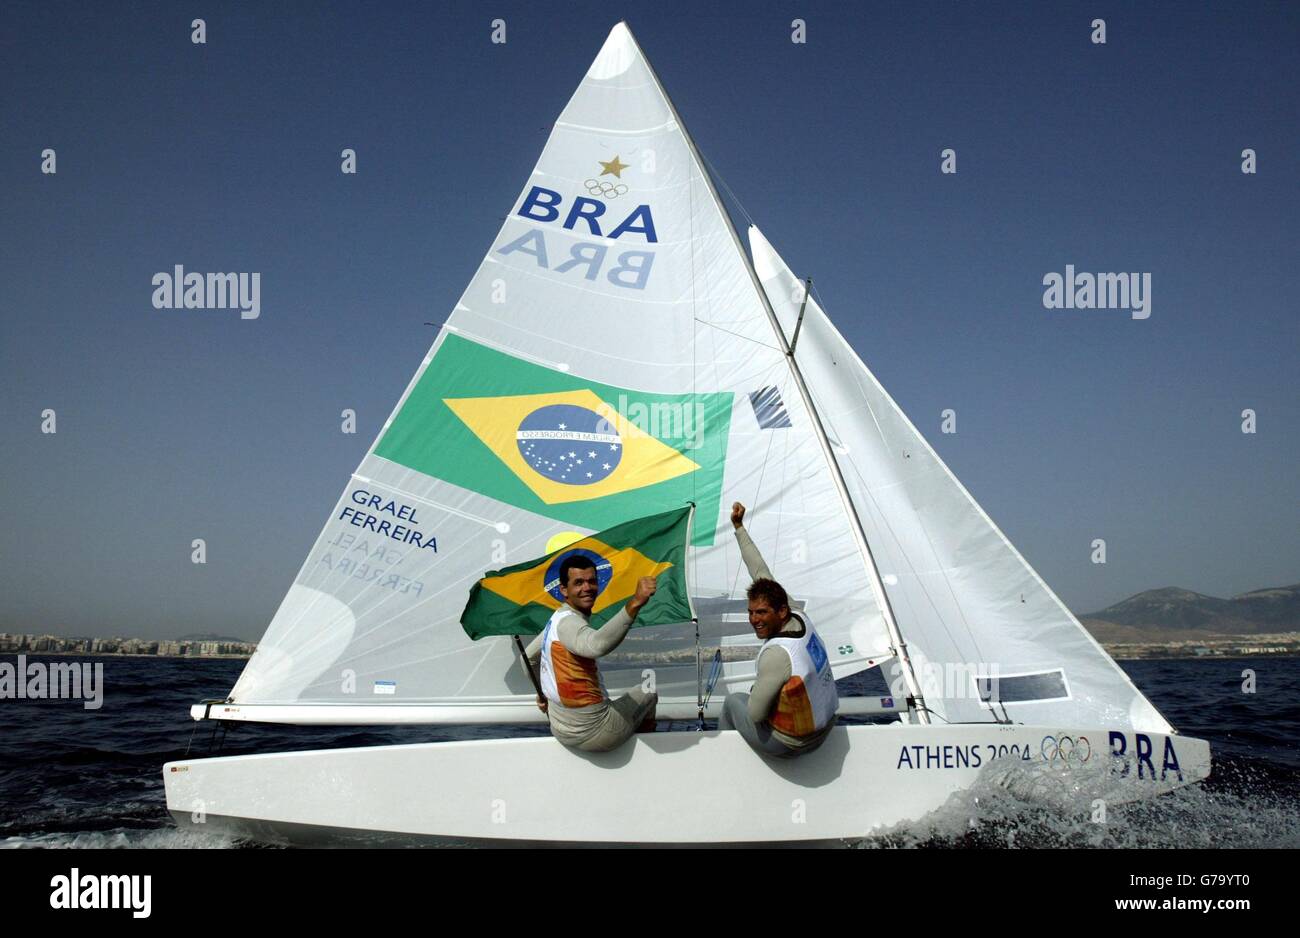 Die Brasilianer Torben Grael (links) und Marcelo Ferreira feiern den Gewinn einer Goldmedaille in der Star-Klasse im Agios Kosmas Olympic Sailing Center in Athen, Griechenland, während der Olympischen Spiele. Stockfoto